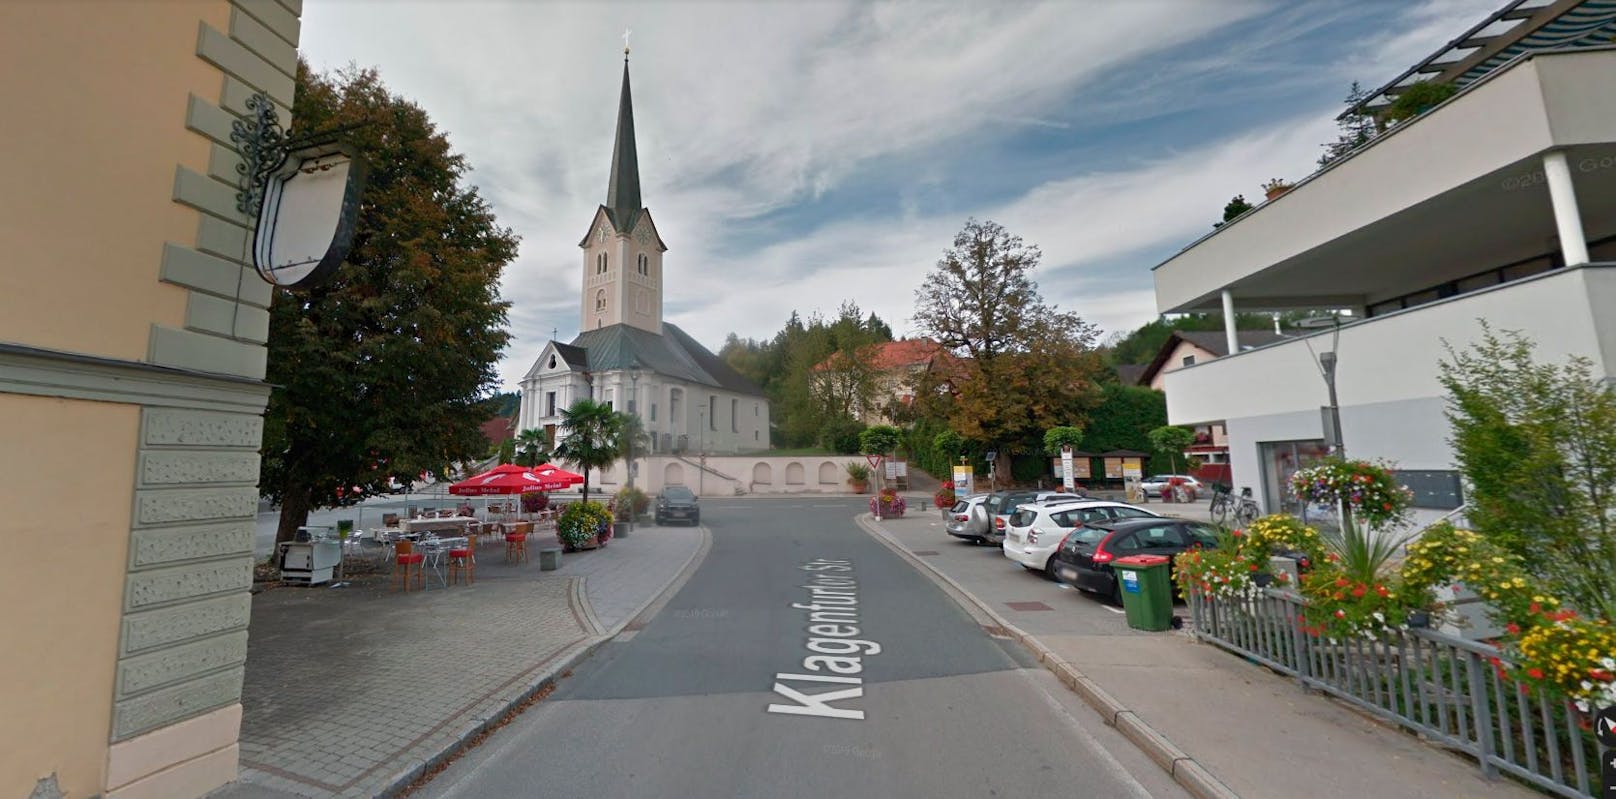 Blick auf den Kirchplatz von Moosburg, Kärnten. Symbolbild